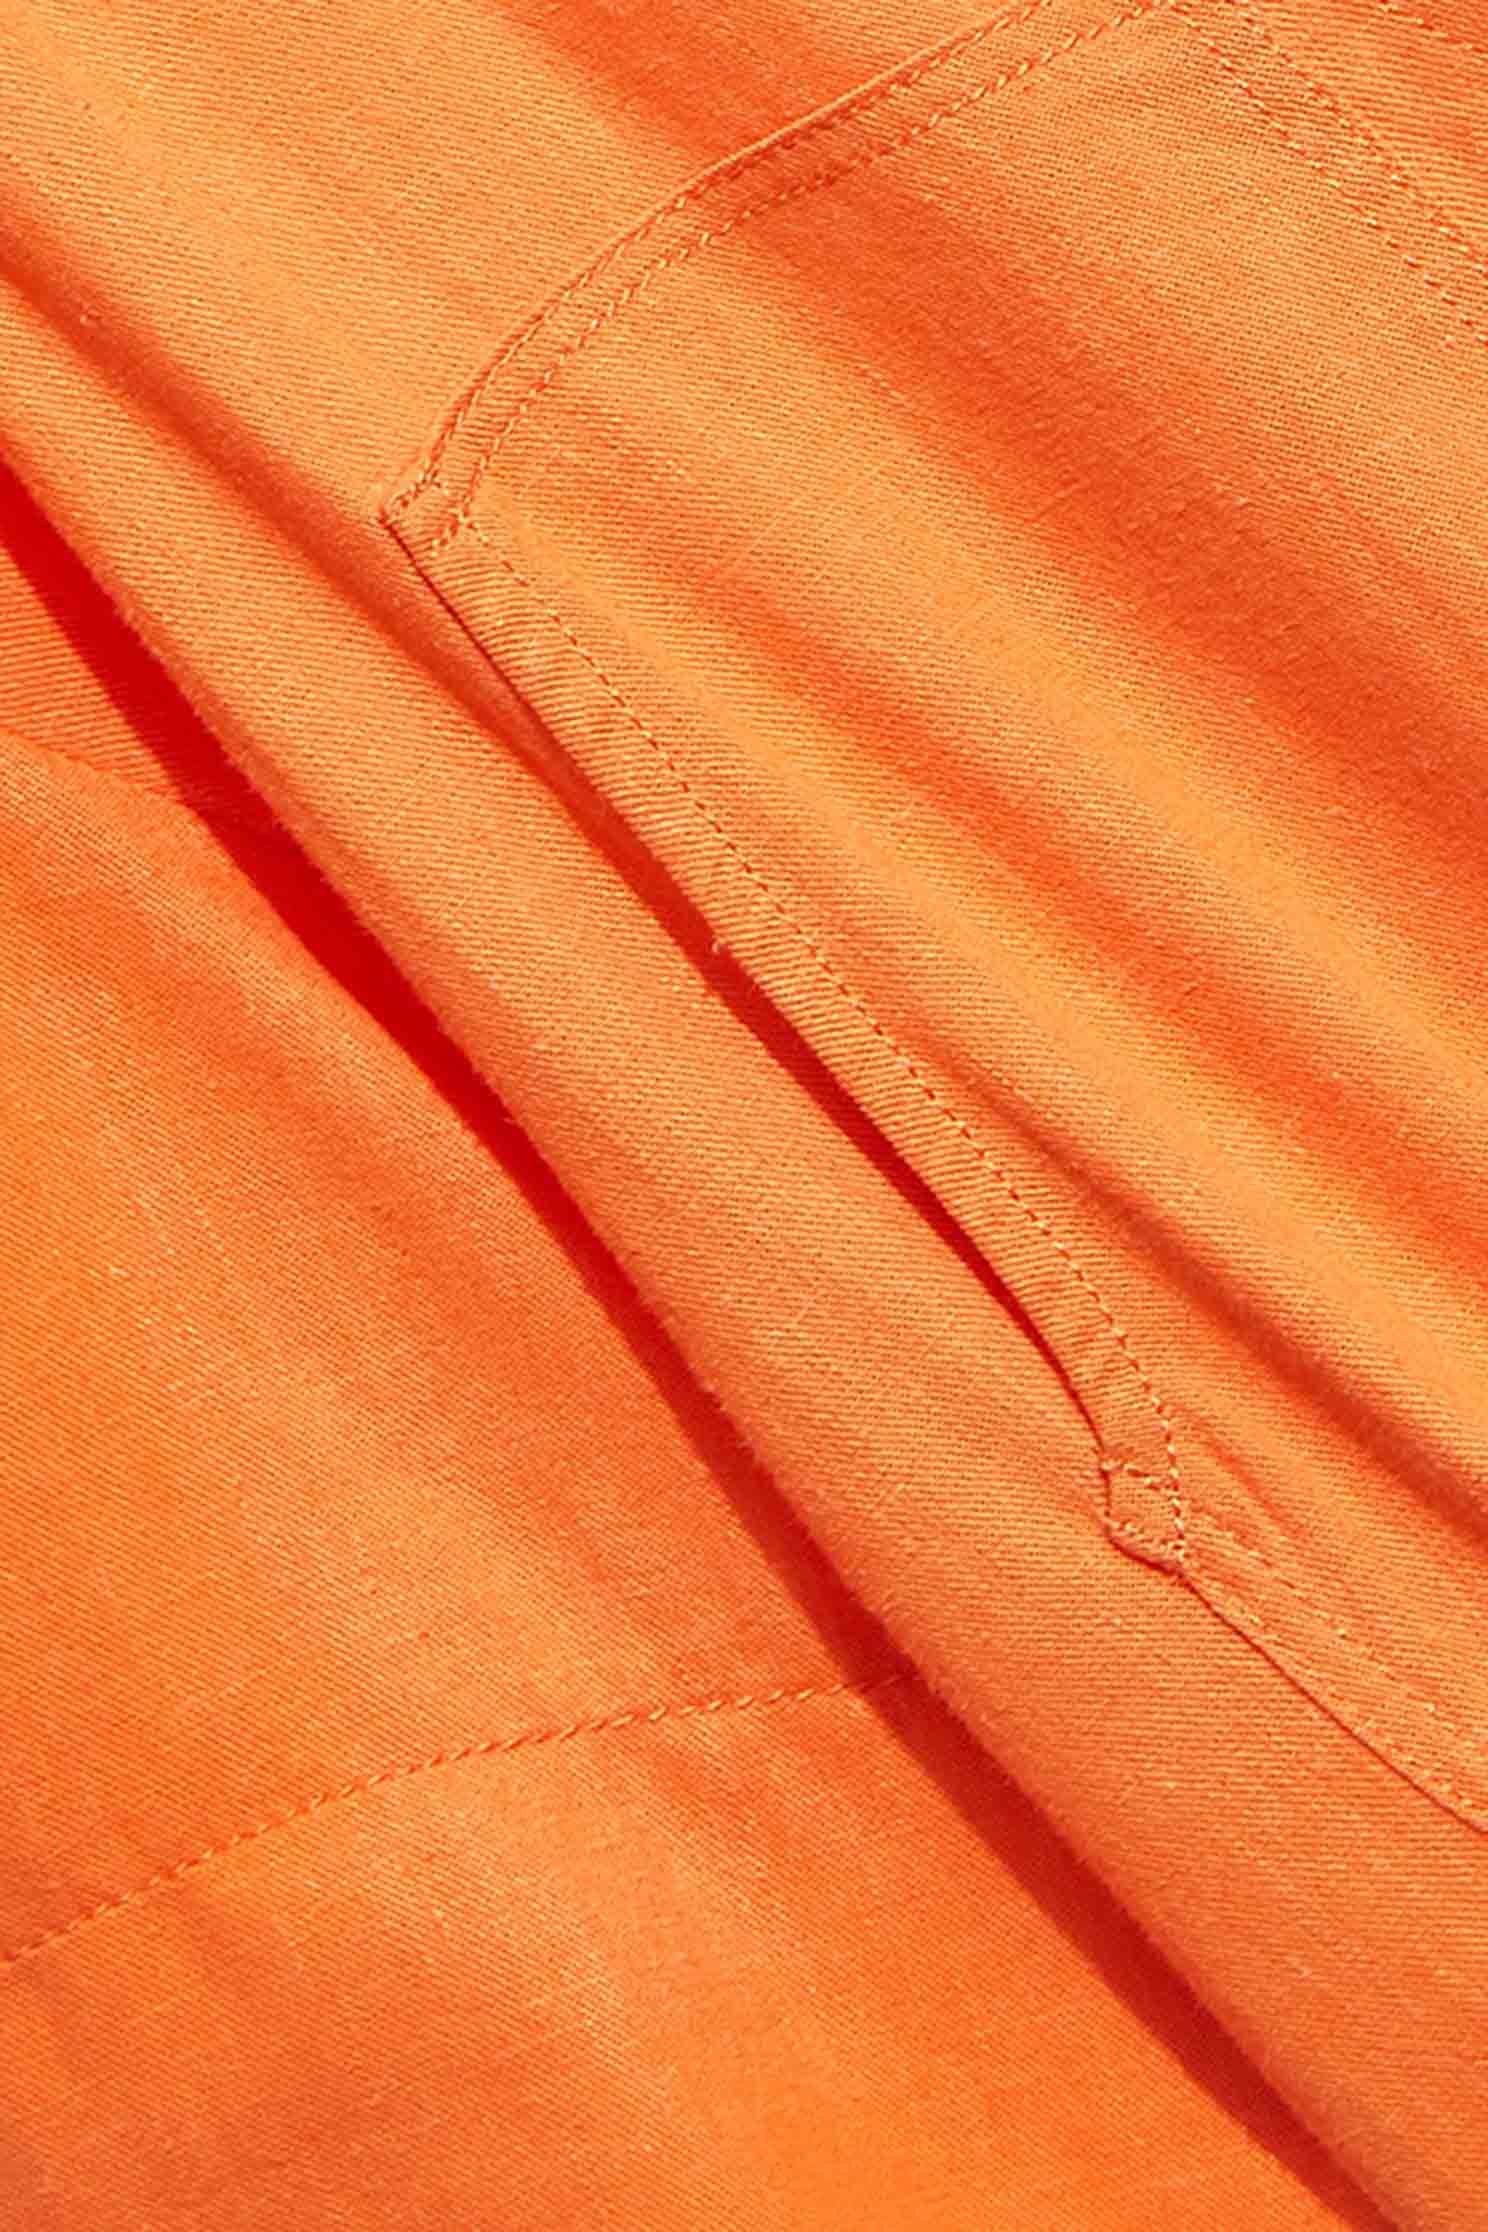 橘色翻領洋裝橘色翻領洋裝,一般洋裝,春夏穿搭,短袖洋裝,舒適主義